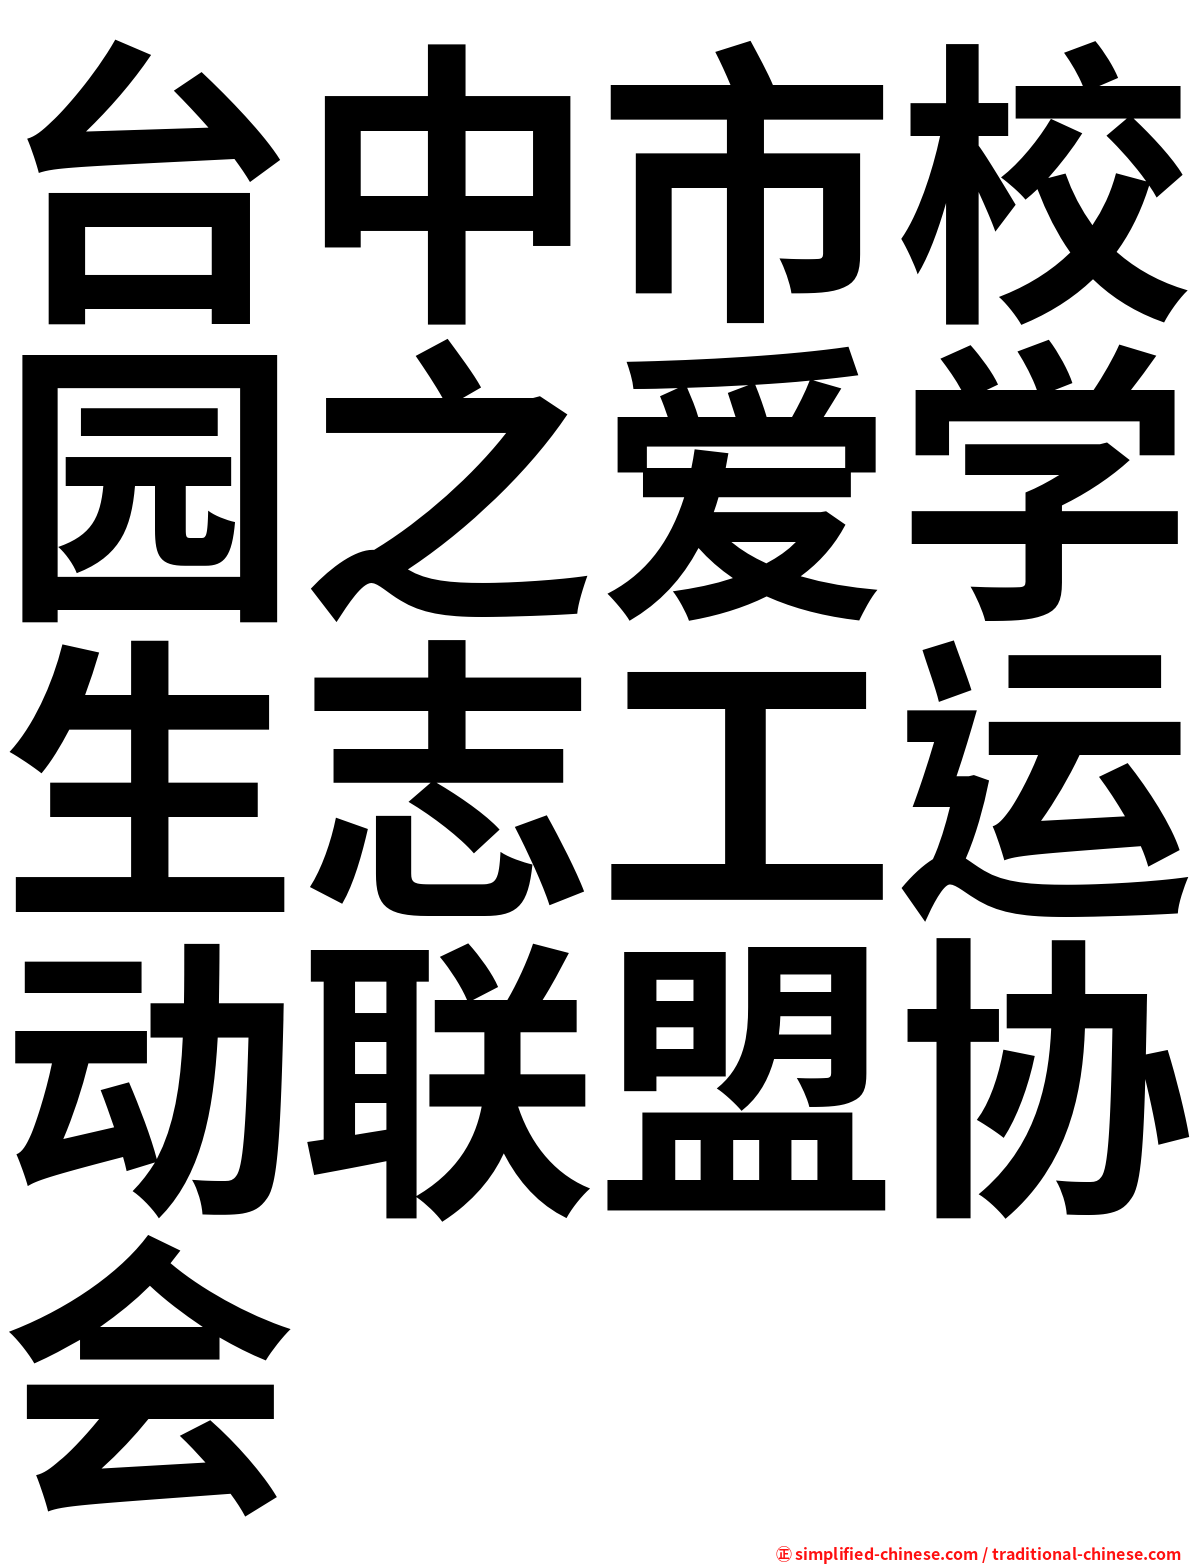 台中市校园之爱学生志工运动联盟协会